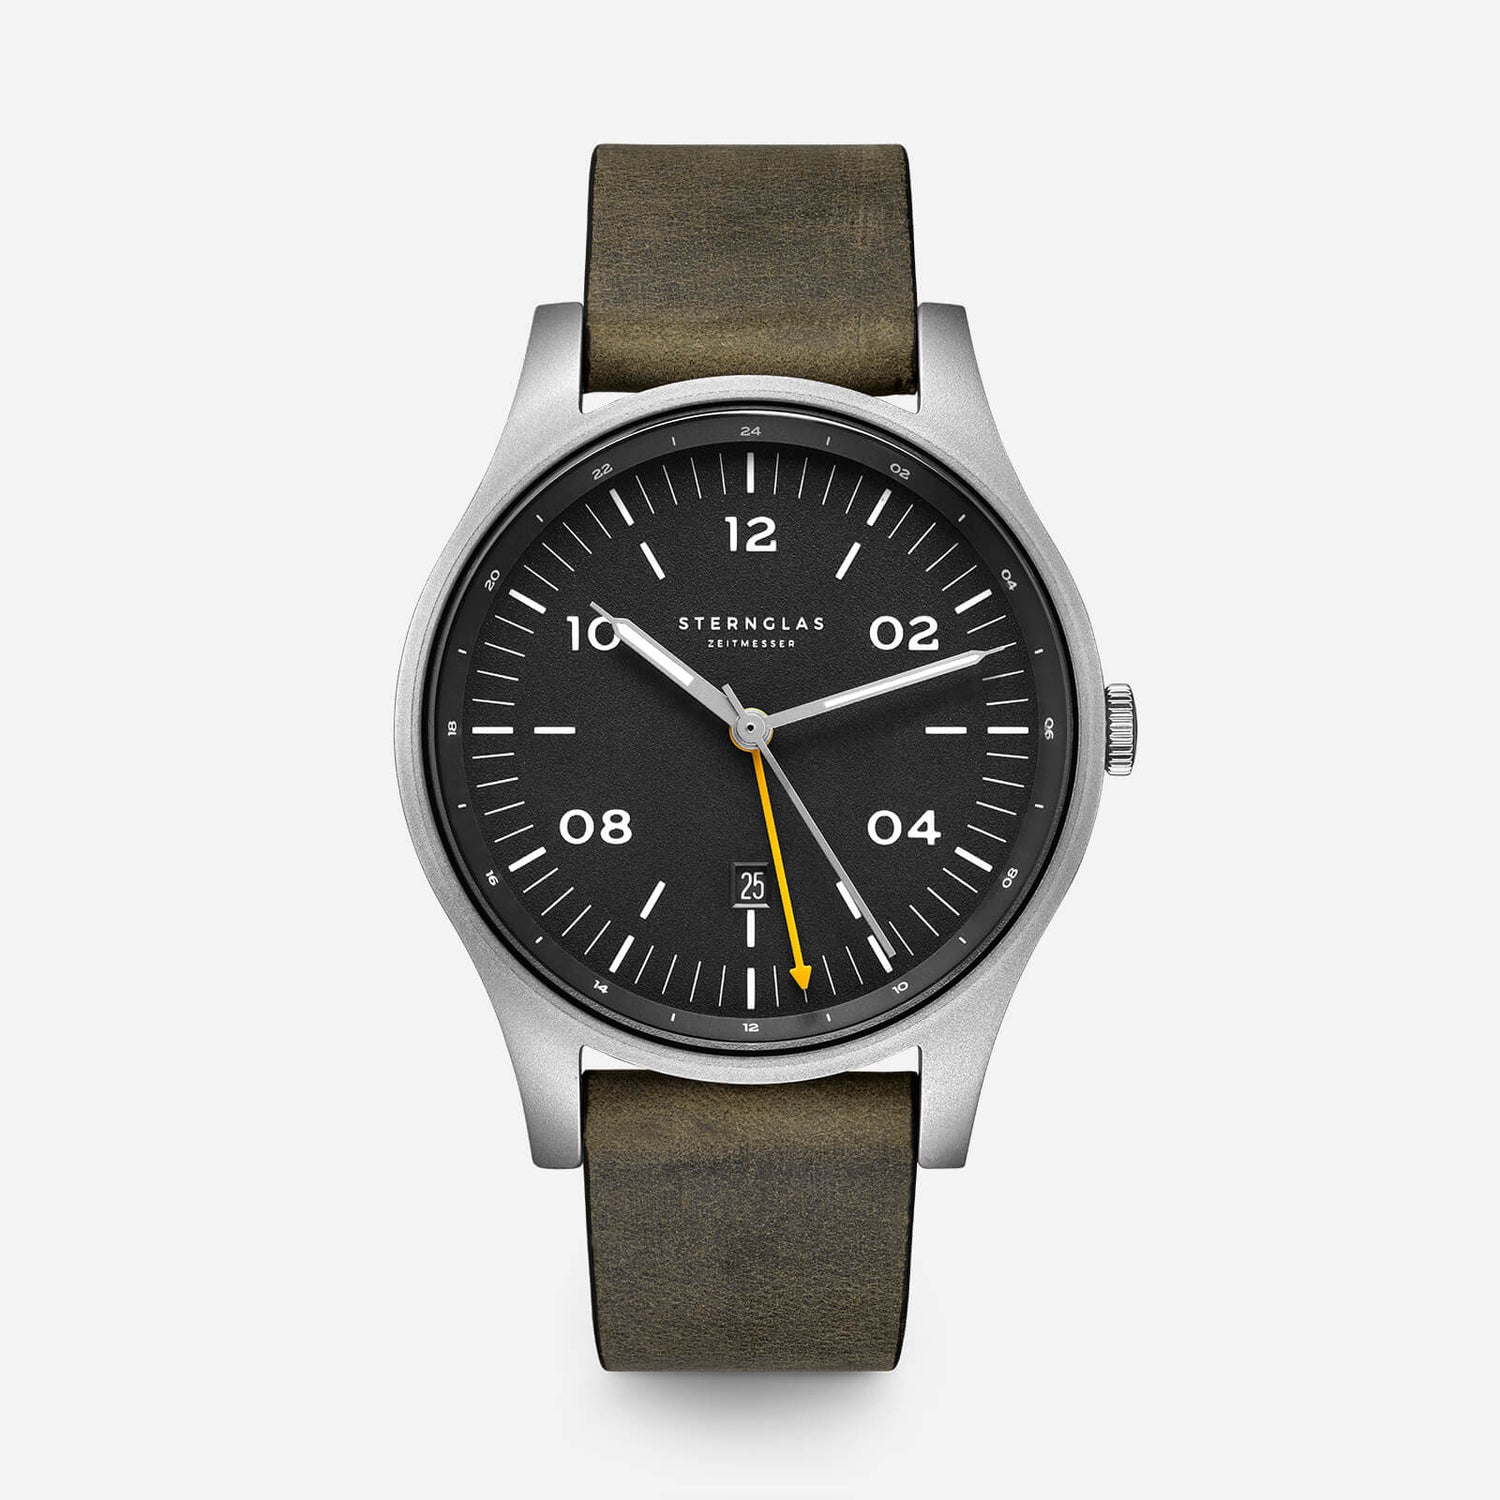 popup|Robustes Field-Watch Design mit Funktion|Widerstandsfähige Materialien und die zusätzliche Zeitzone macht die Taiga GMT perfekt für jeden Reisenden.